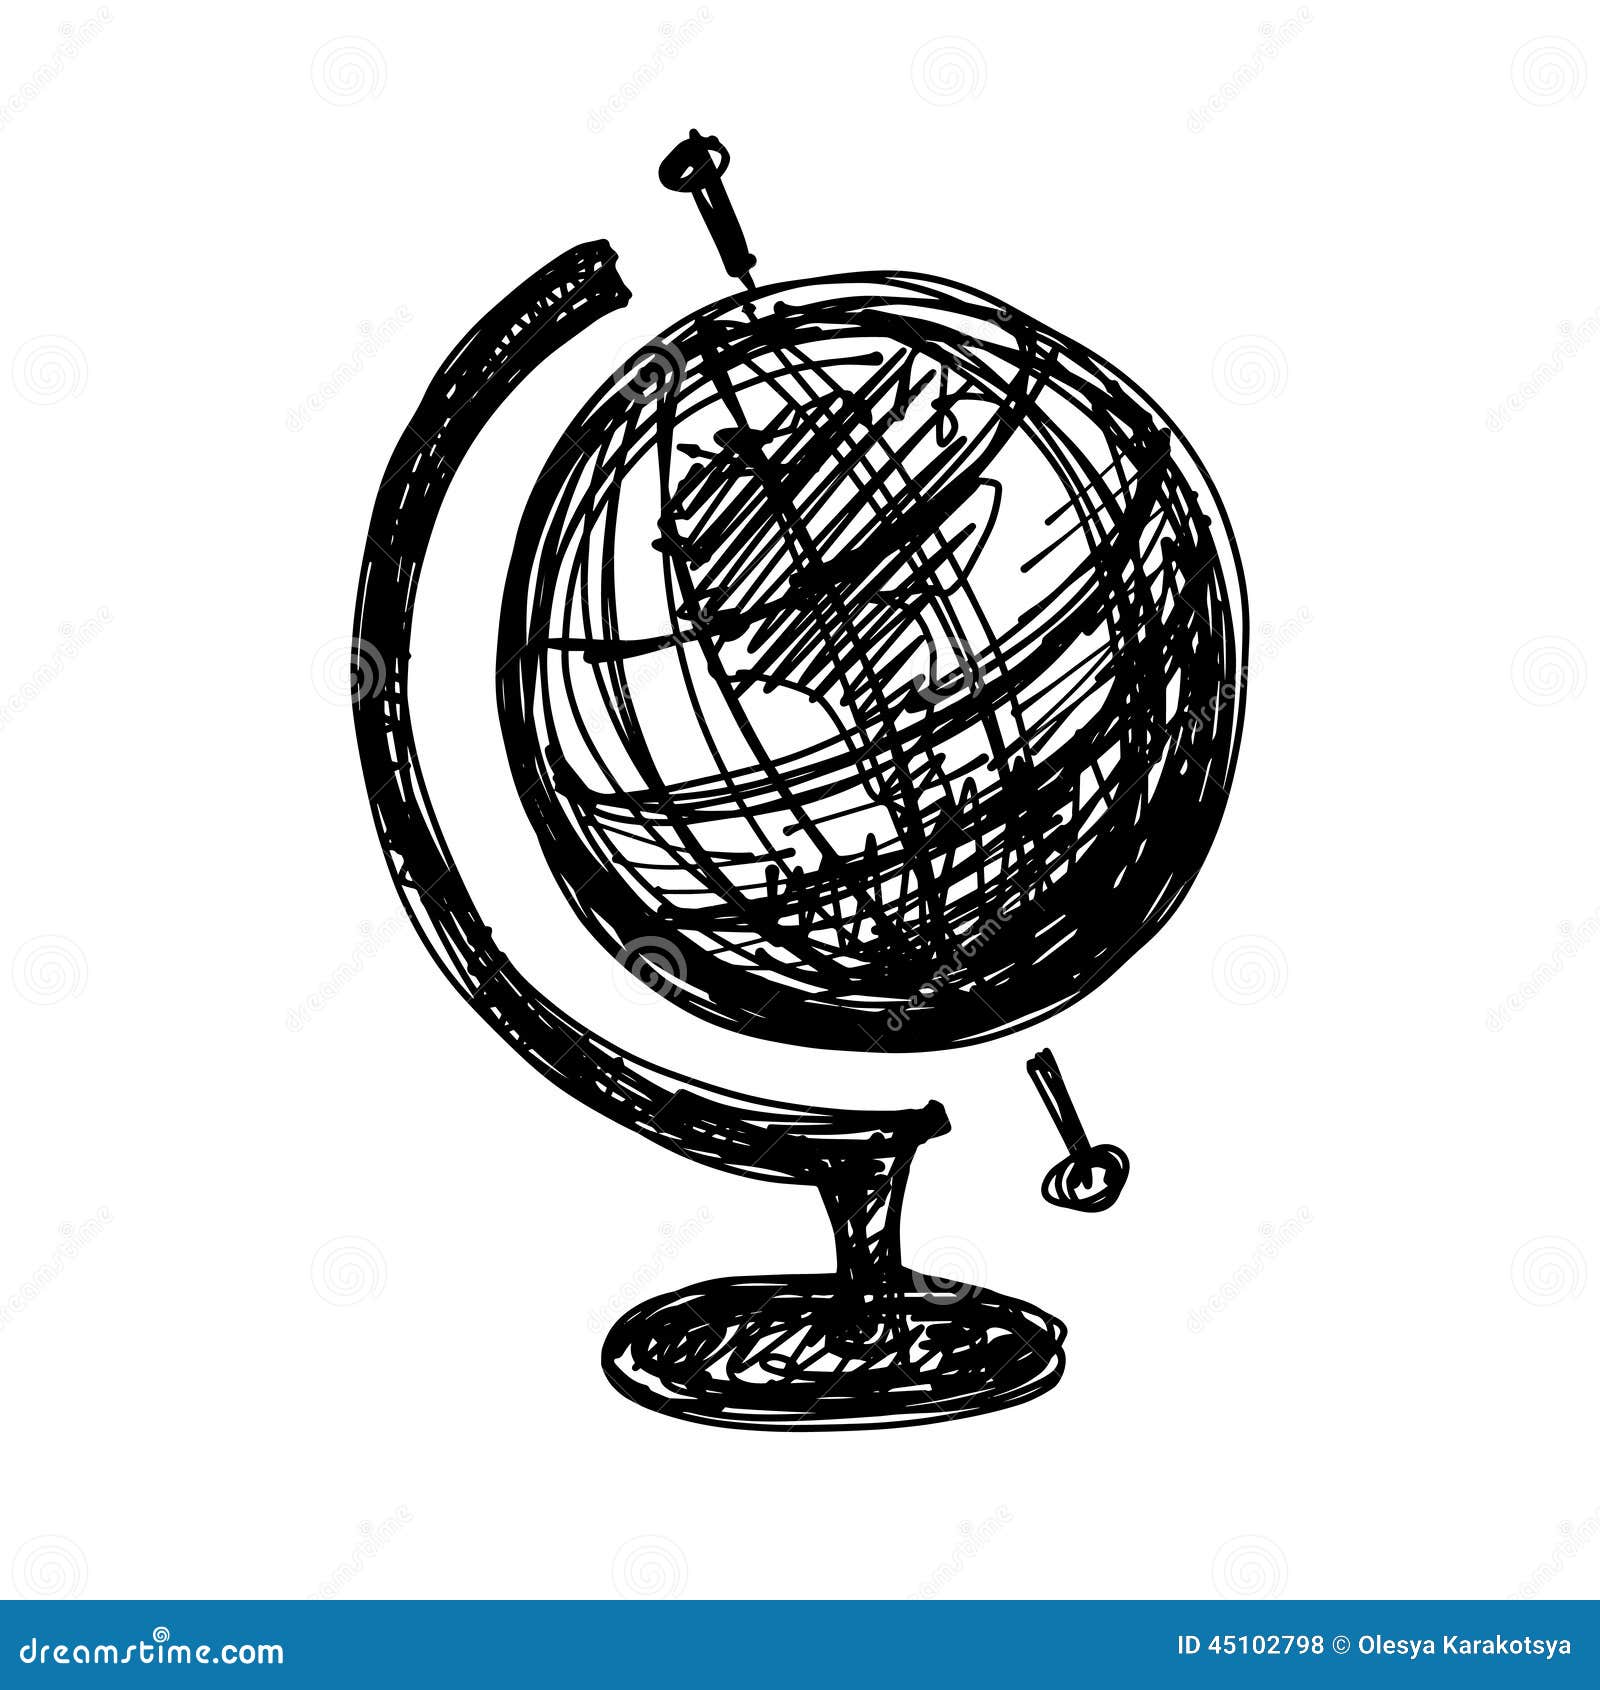 Globe Sketch Images  Free Download on Freepik